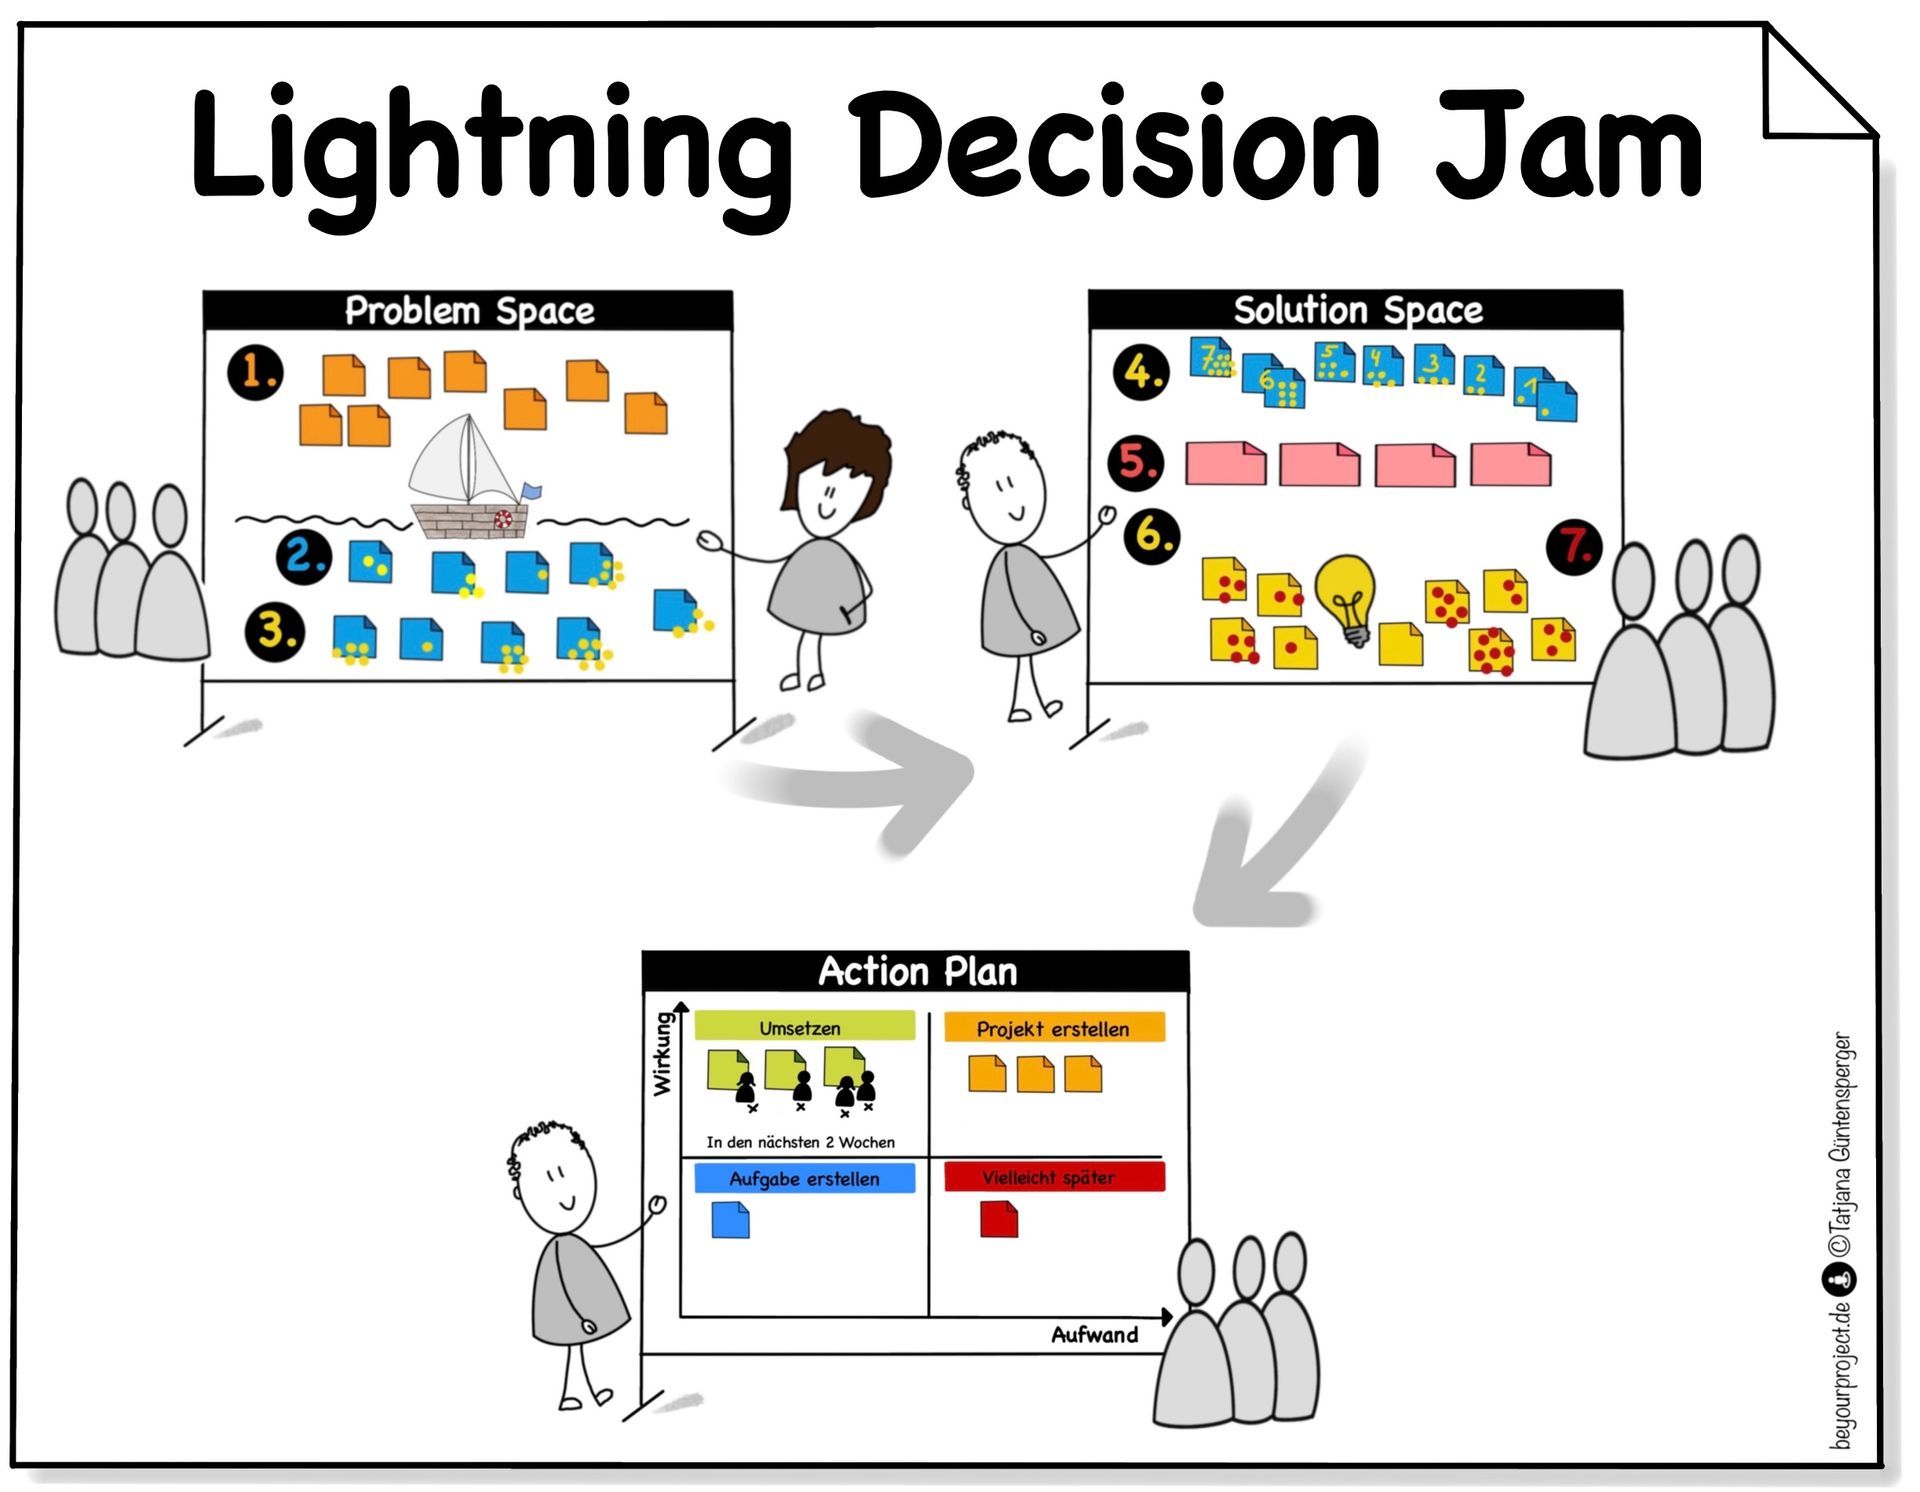 Lightning Decicion Jam